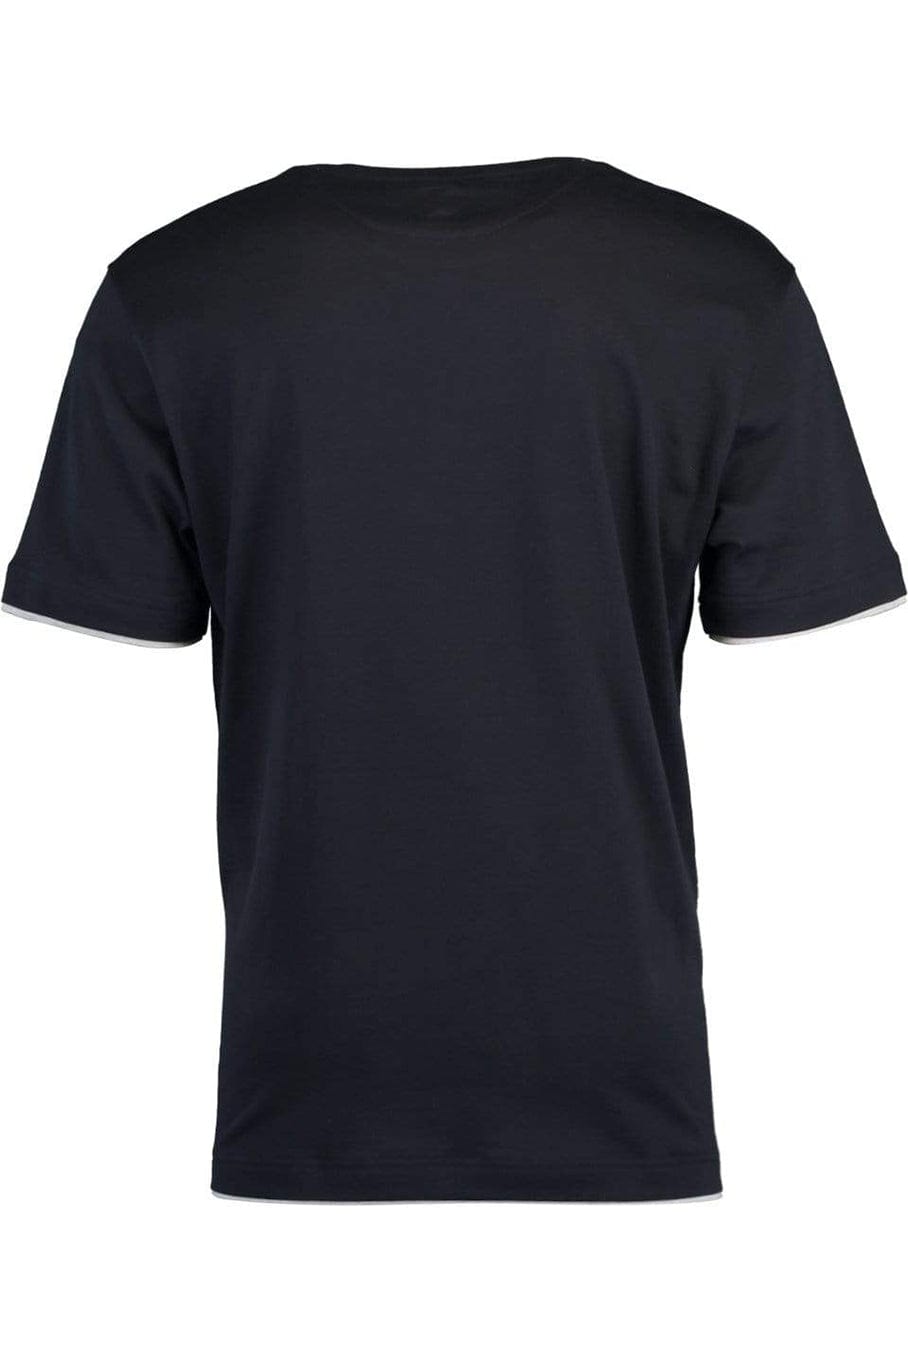 Navy and Grey Two-Tone T-Shirt MENSCLOTHINGTEE ELEVENTY   